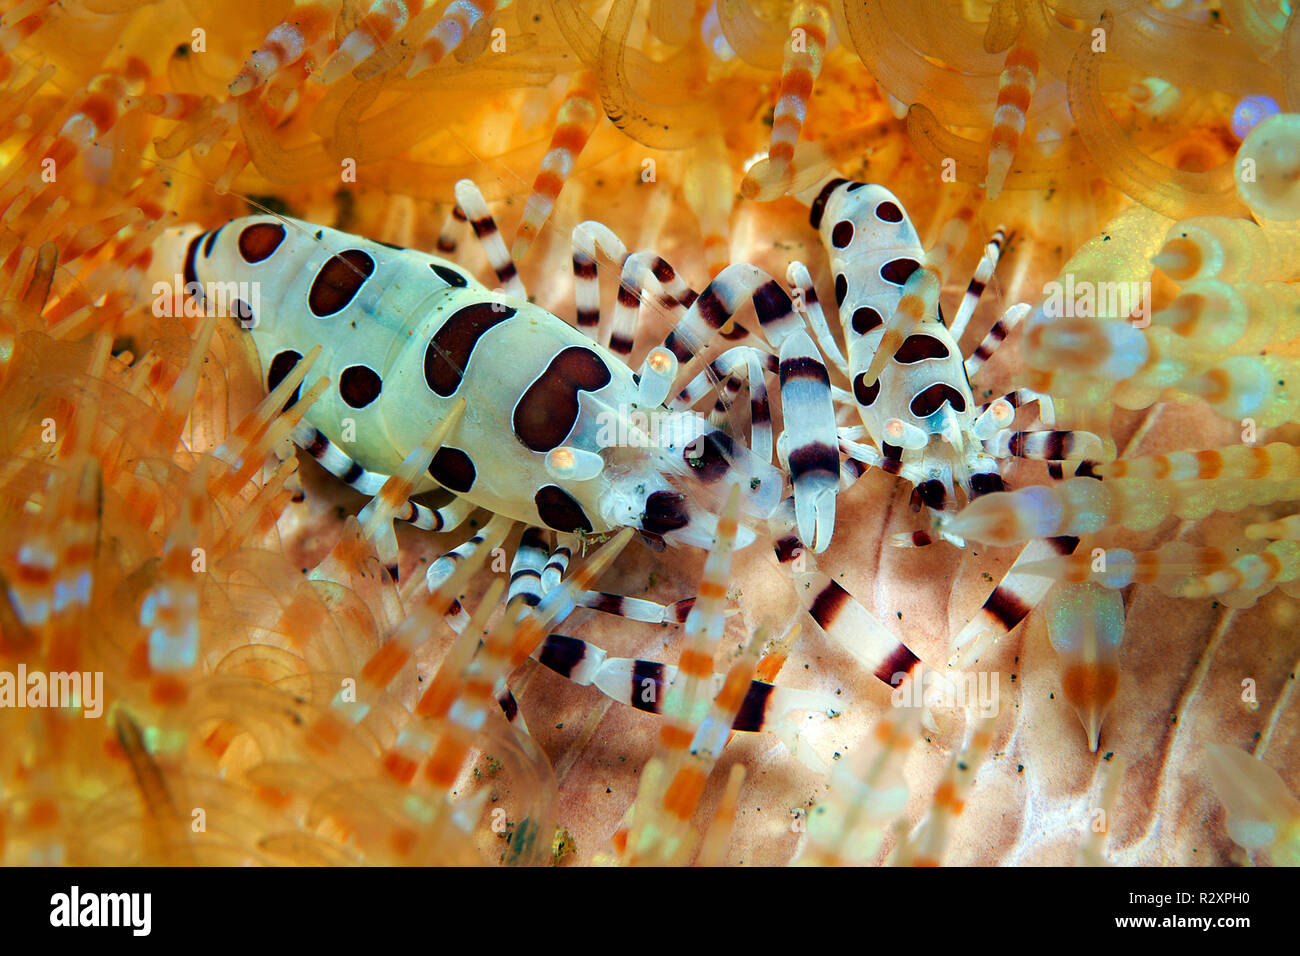 Camarón Colemans (Periclimenes colemani) vive en fuego Astenosoma varium (erizos de mar), SIMBIOSIS, Bali, Indonesia Foto de stock